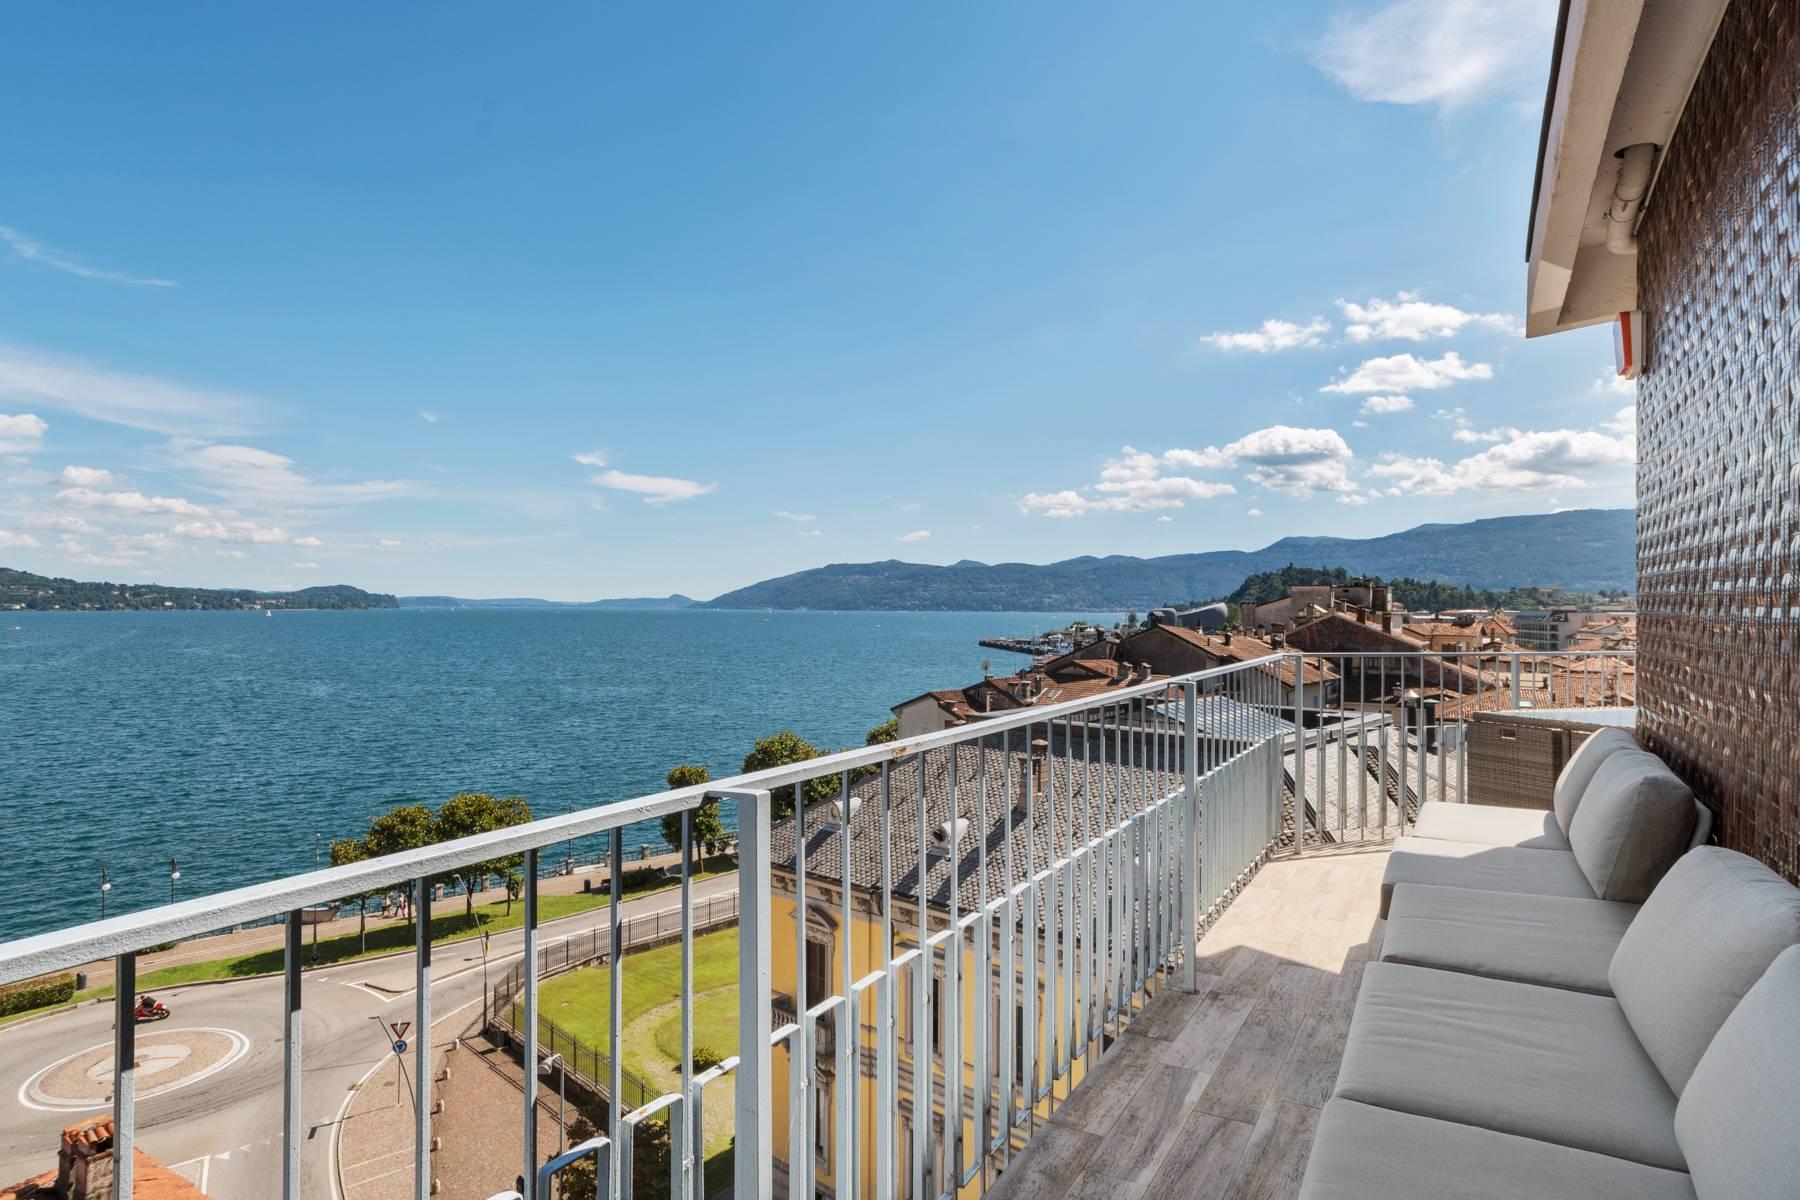 Attico mozzafiato con balcone e terrazza che dominano tutto il lago Maggiore situato nel centro di Intra - 1